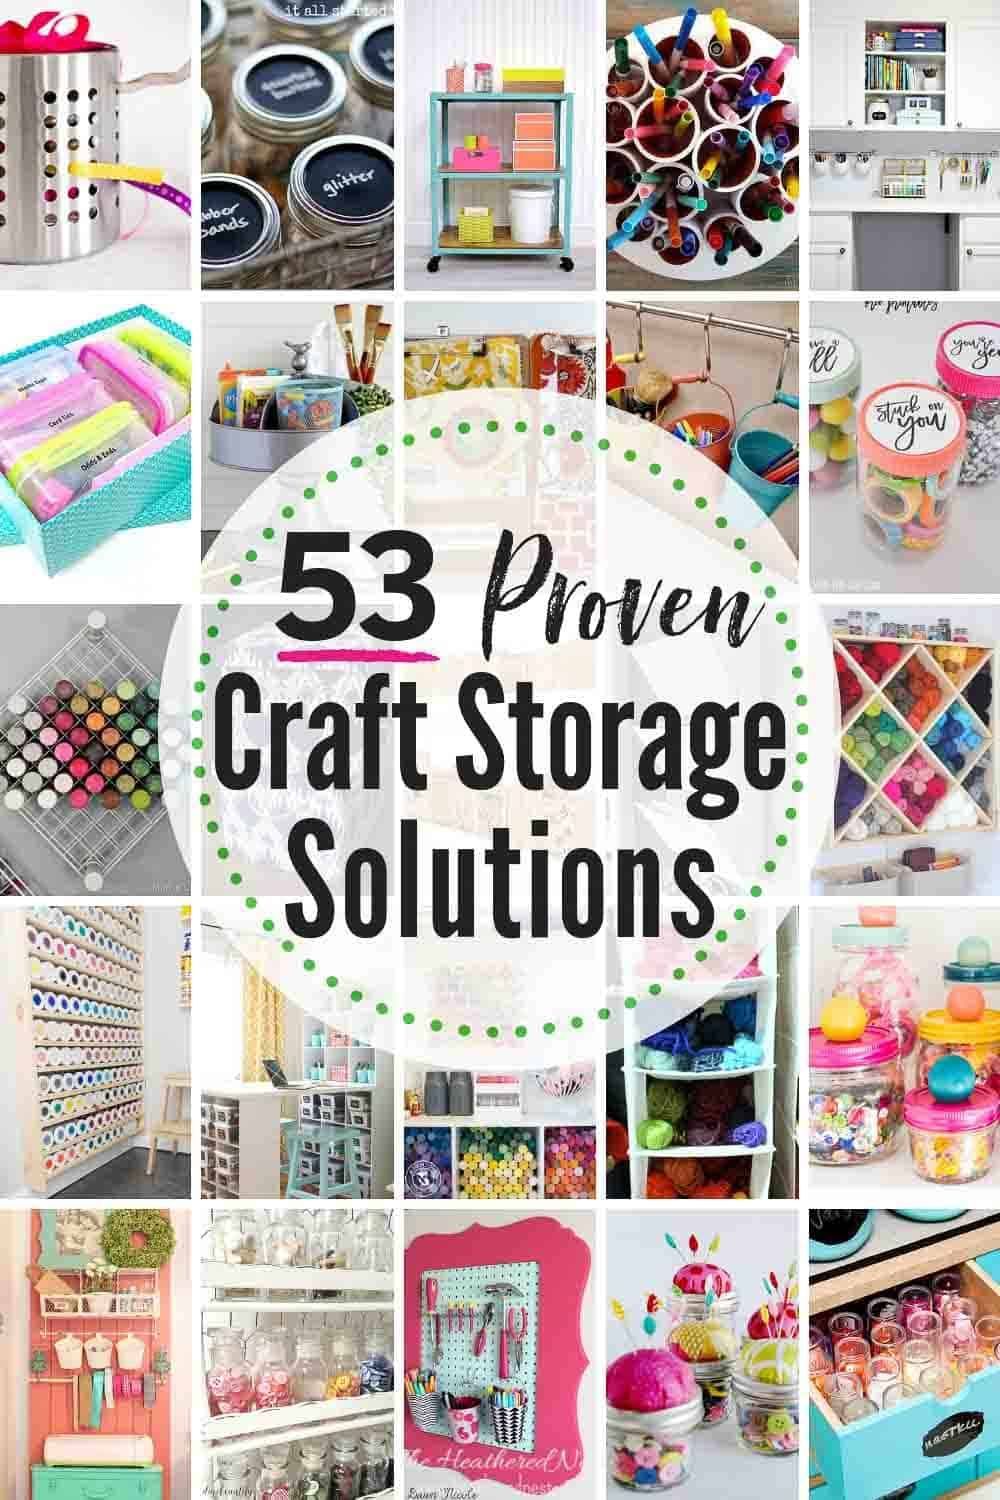 53 BEST Craft Organization And Craft Storage Ideas | The Heathered Nest - 53 BEST Craft Organization And Craft Storage Ideas | The Heathered Nest -   18 diy Crafts organization ideas